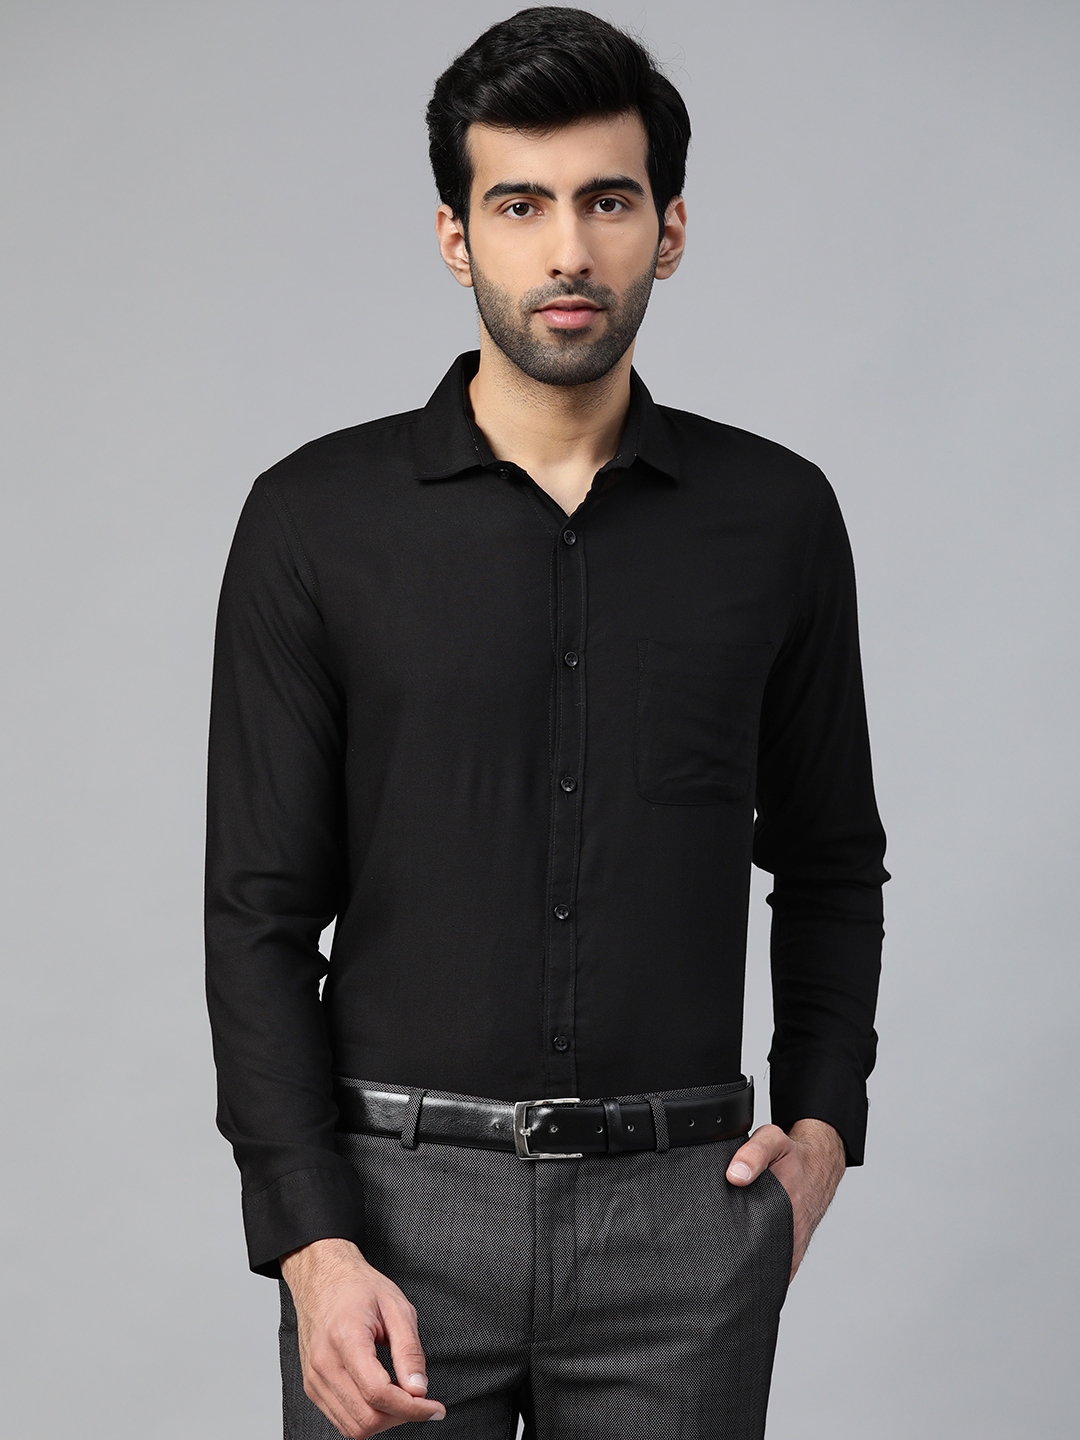 Buy DENNISON Men Black Smart Slim Fit Solid Formal Wrinkle Free Shirt ...